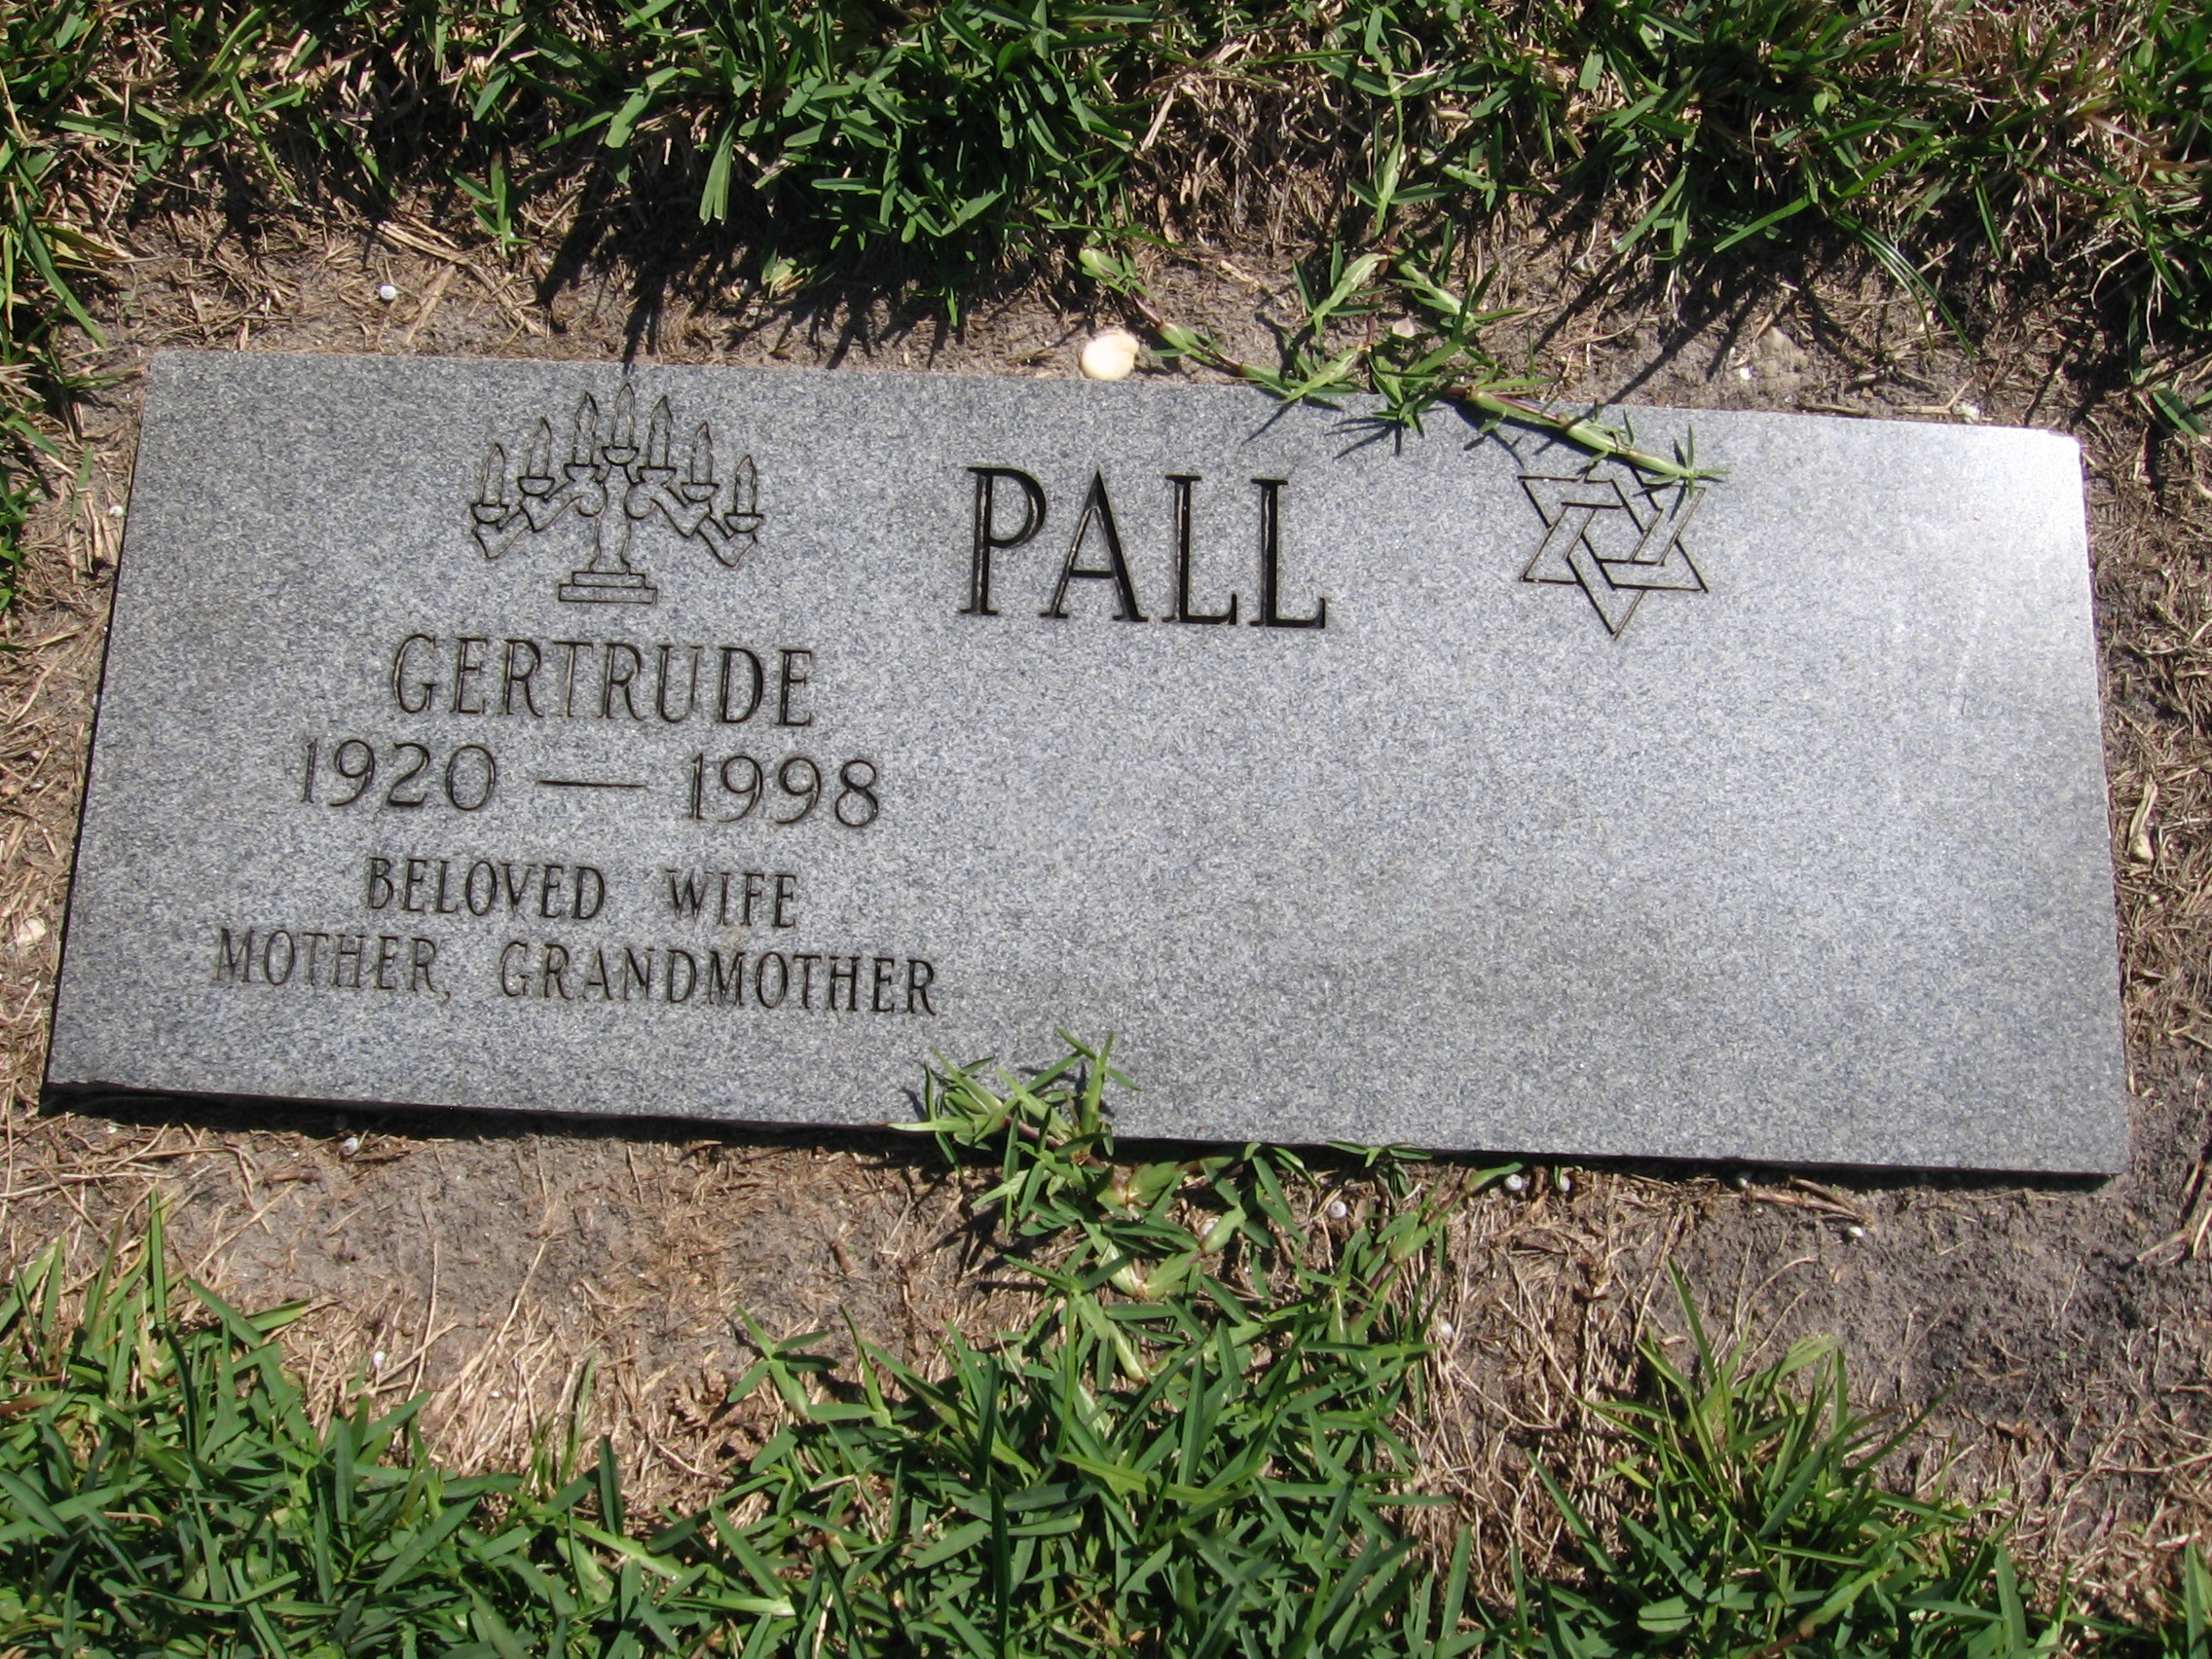 Gertrude Pall